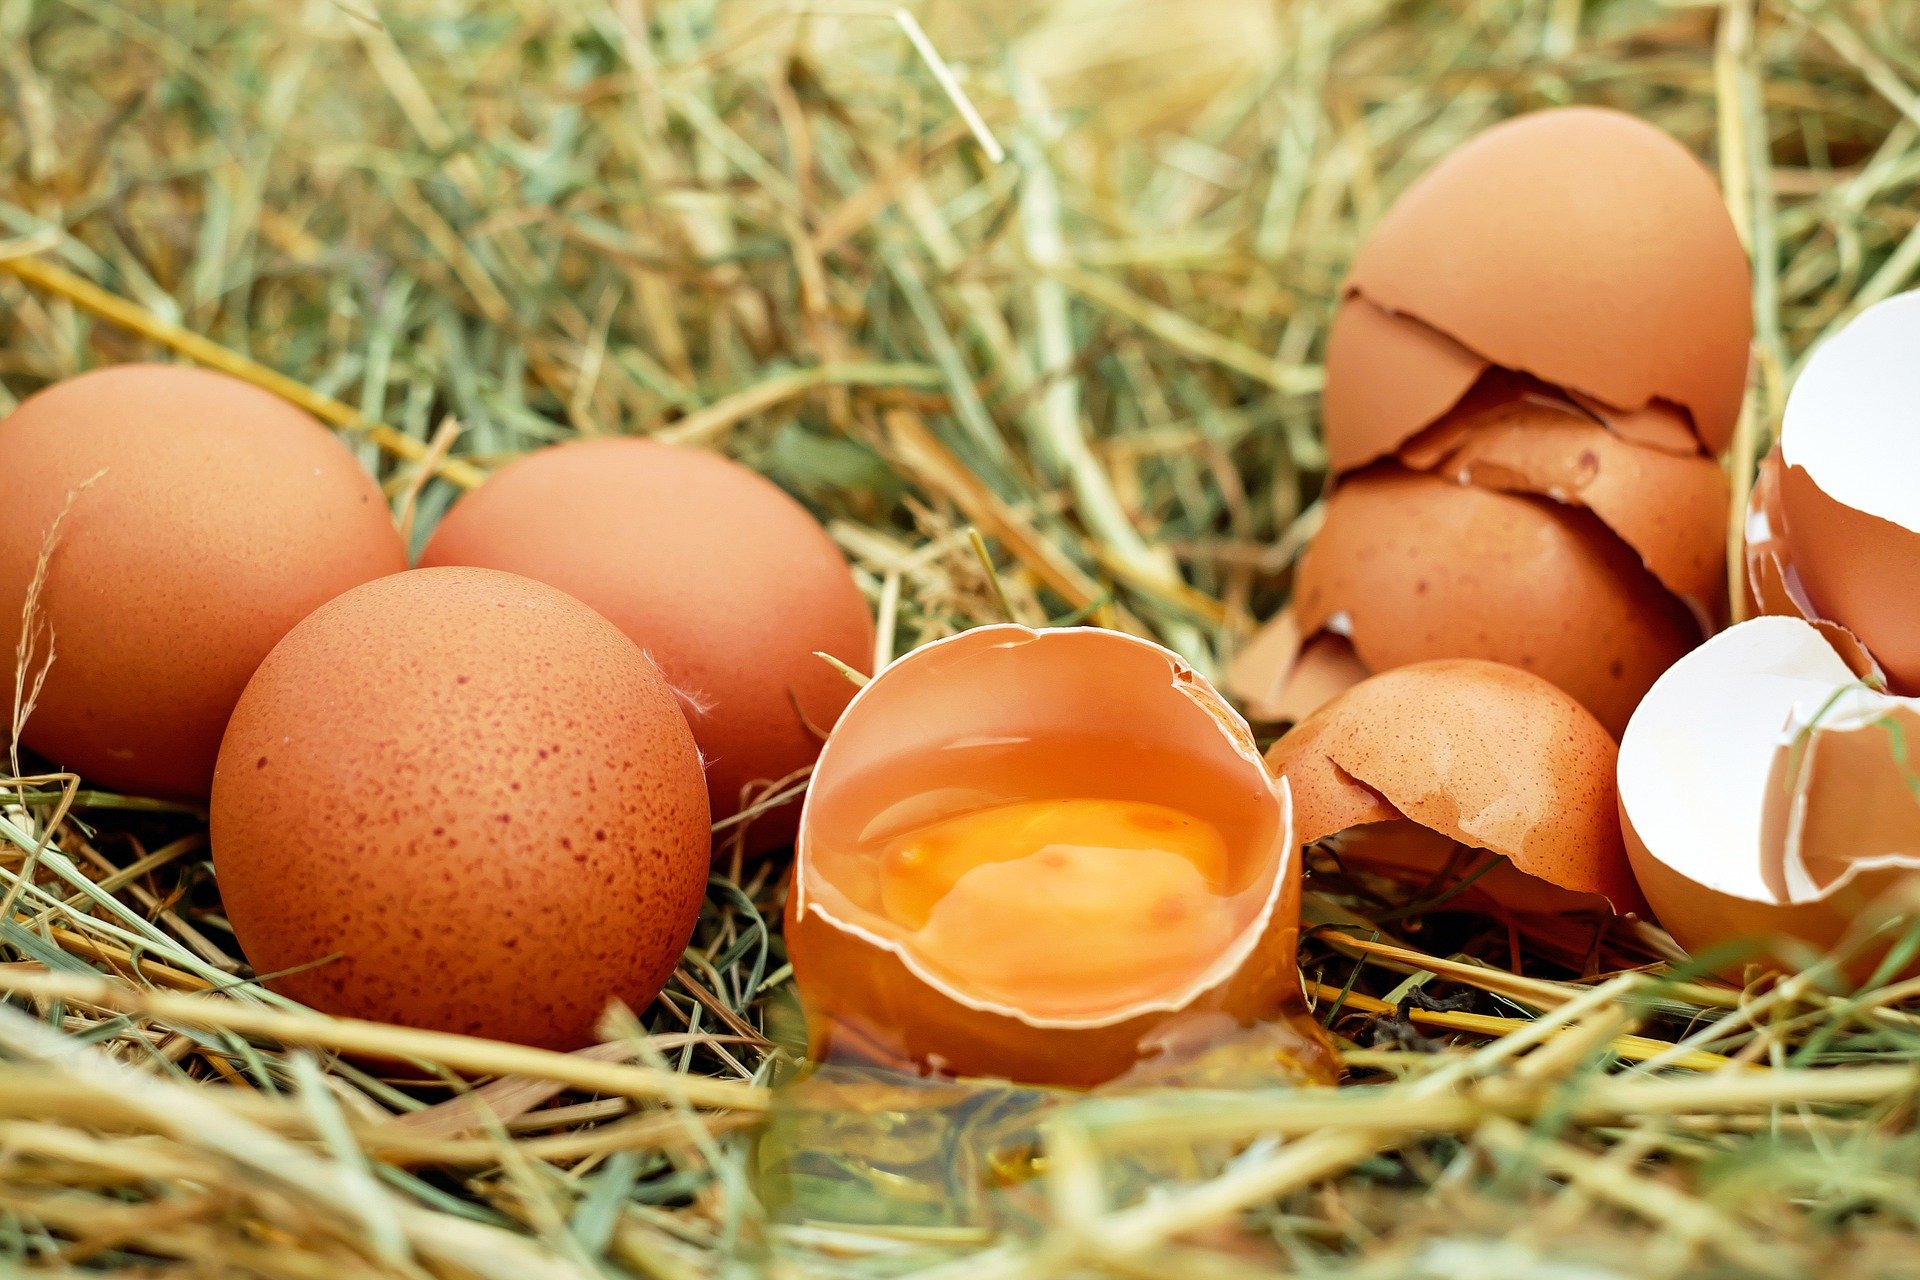 Mujer halla huevo con la clara roja. (Foto Prensa Libre: Pixabay)